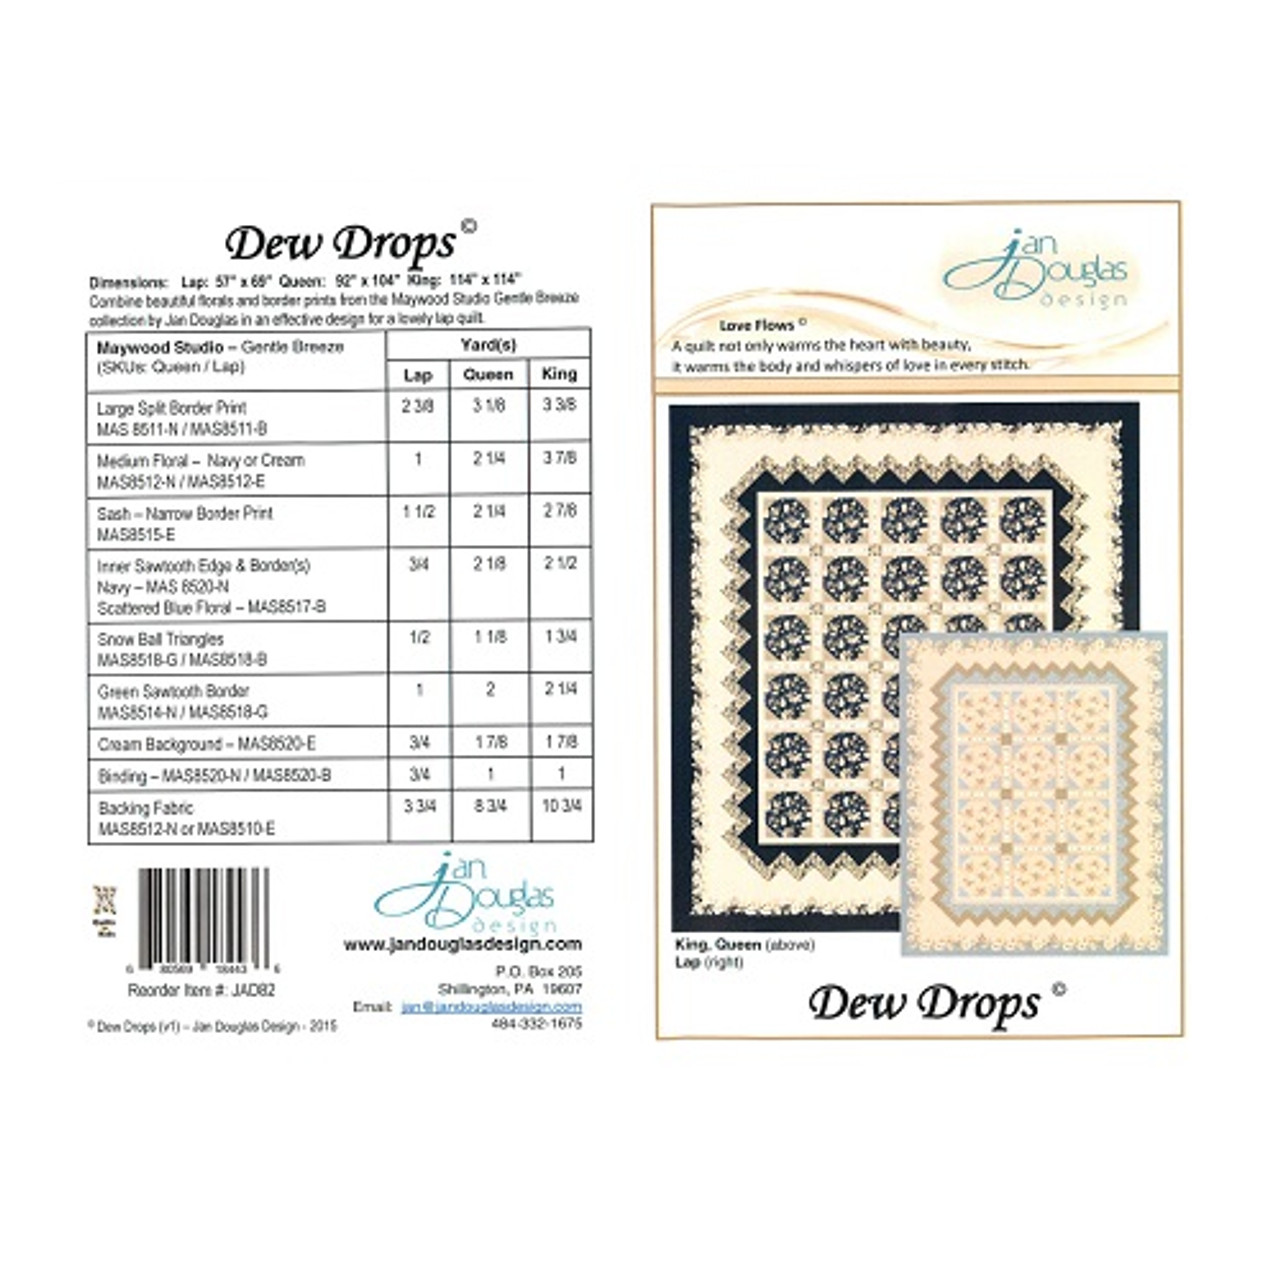 Dew Drops - Jan Douglas Designs - Pattern